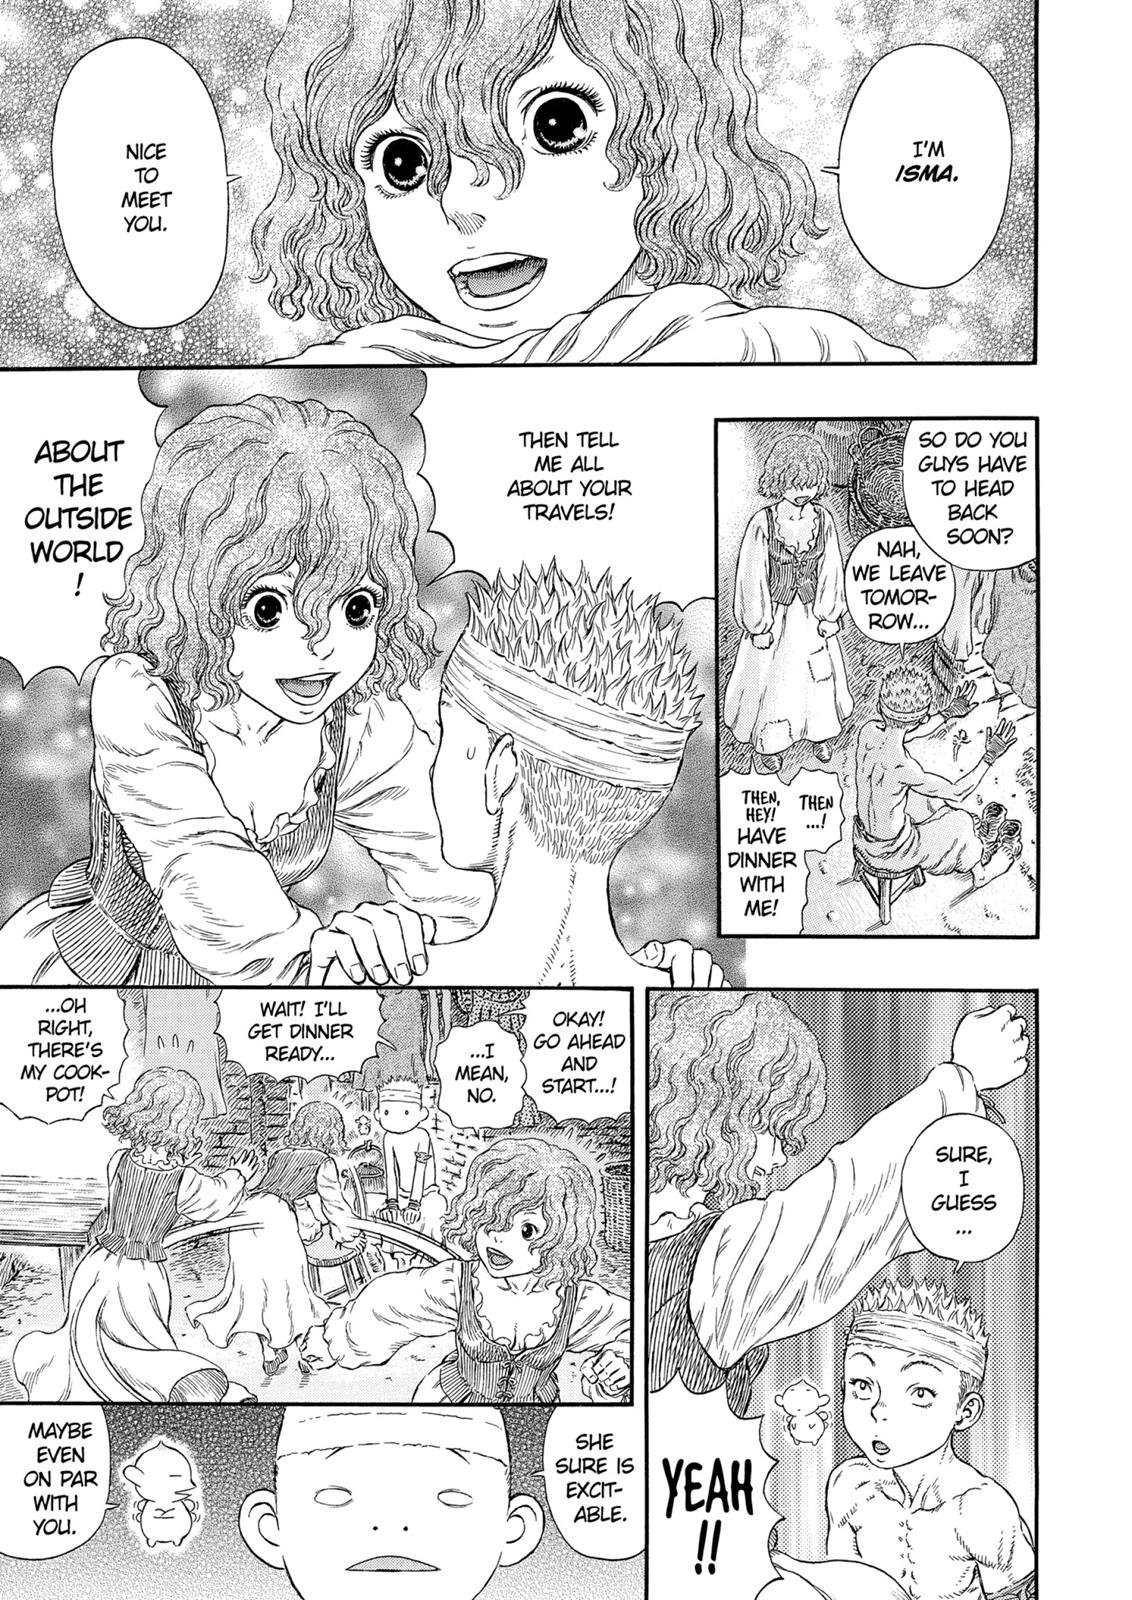 Berserk Manga Chapter 312 image 10